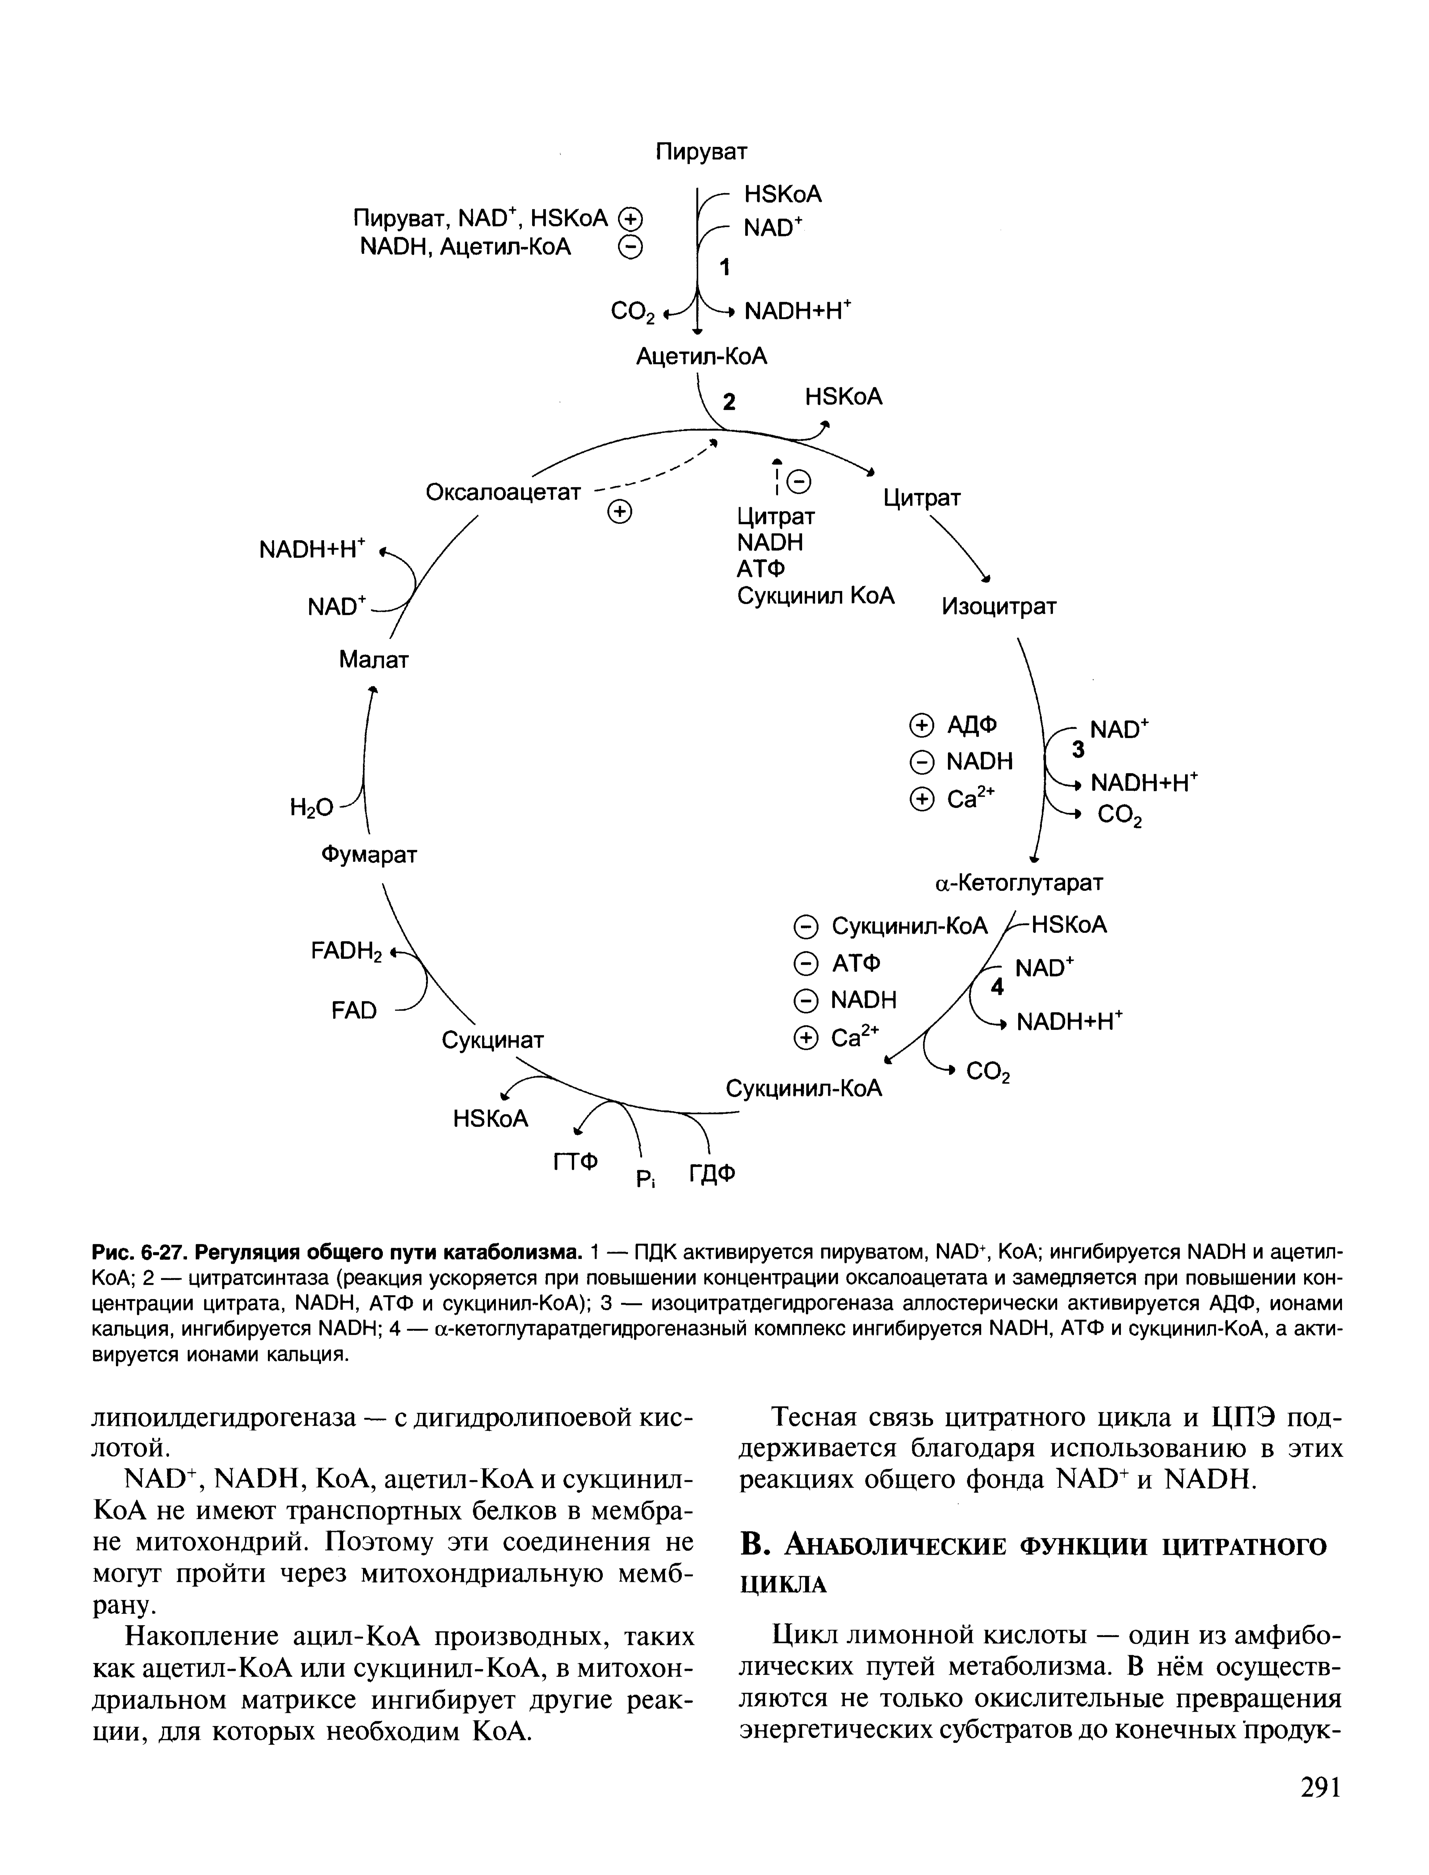 Цитратный цикл. Регуляторные реакции ЦТК. Регуляция скорости цикла трикарбоновых кислот. Механизм регуляции цитратного цикла. Цикл лимонной кислоты цикл Кребса.